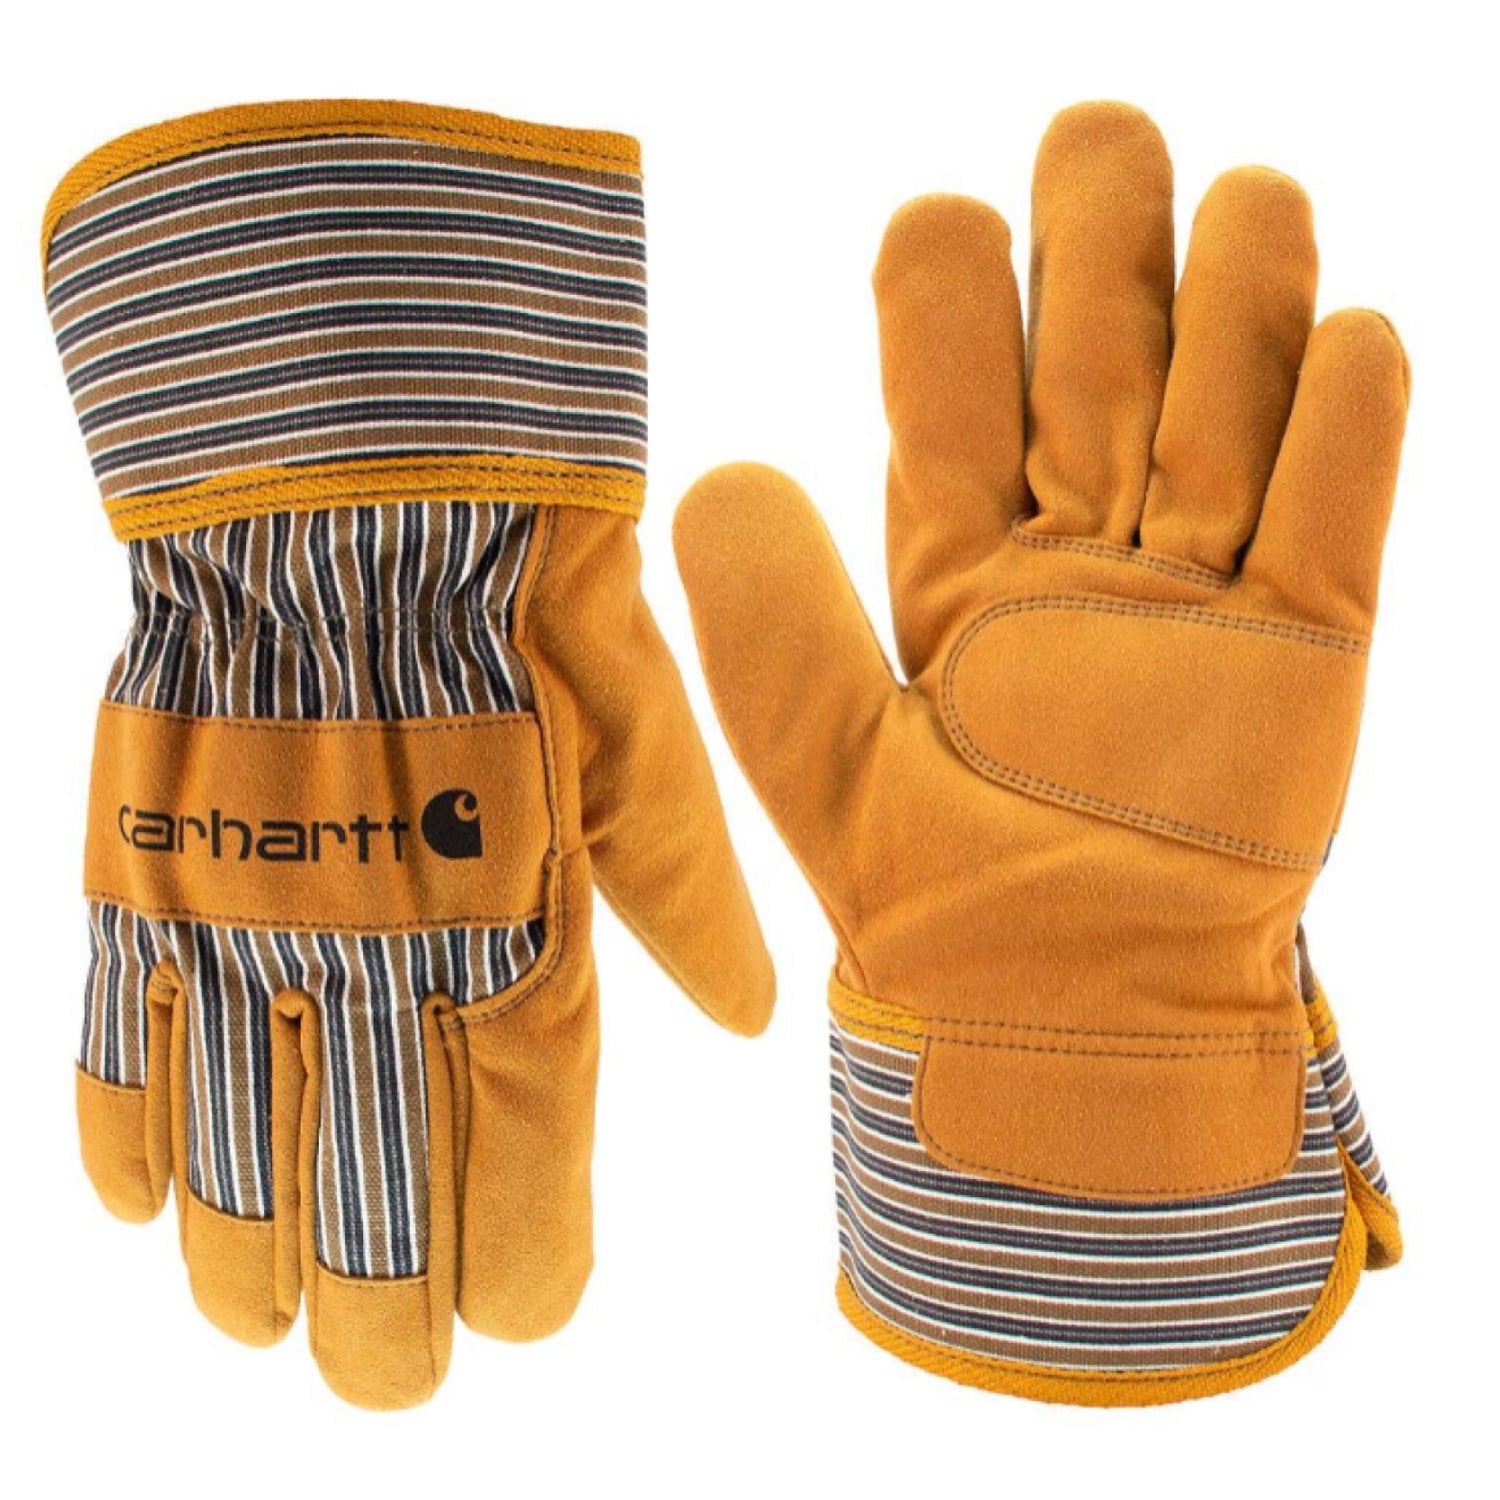 Carhartt Men's Synthetic Suede Safety Cuff Work Glove - Work World - Workwear, Work Boots, Safety Gear